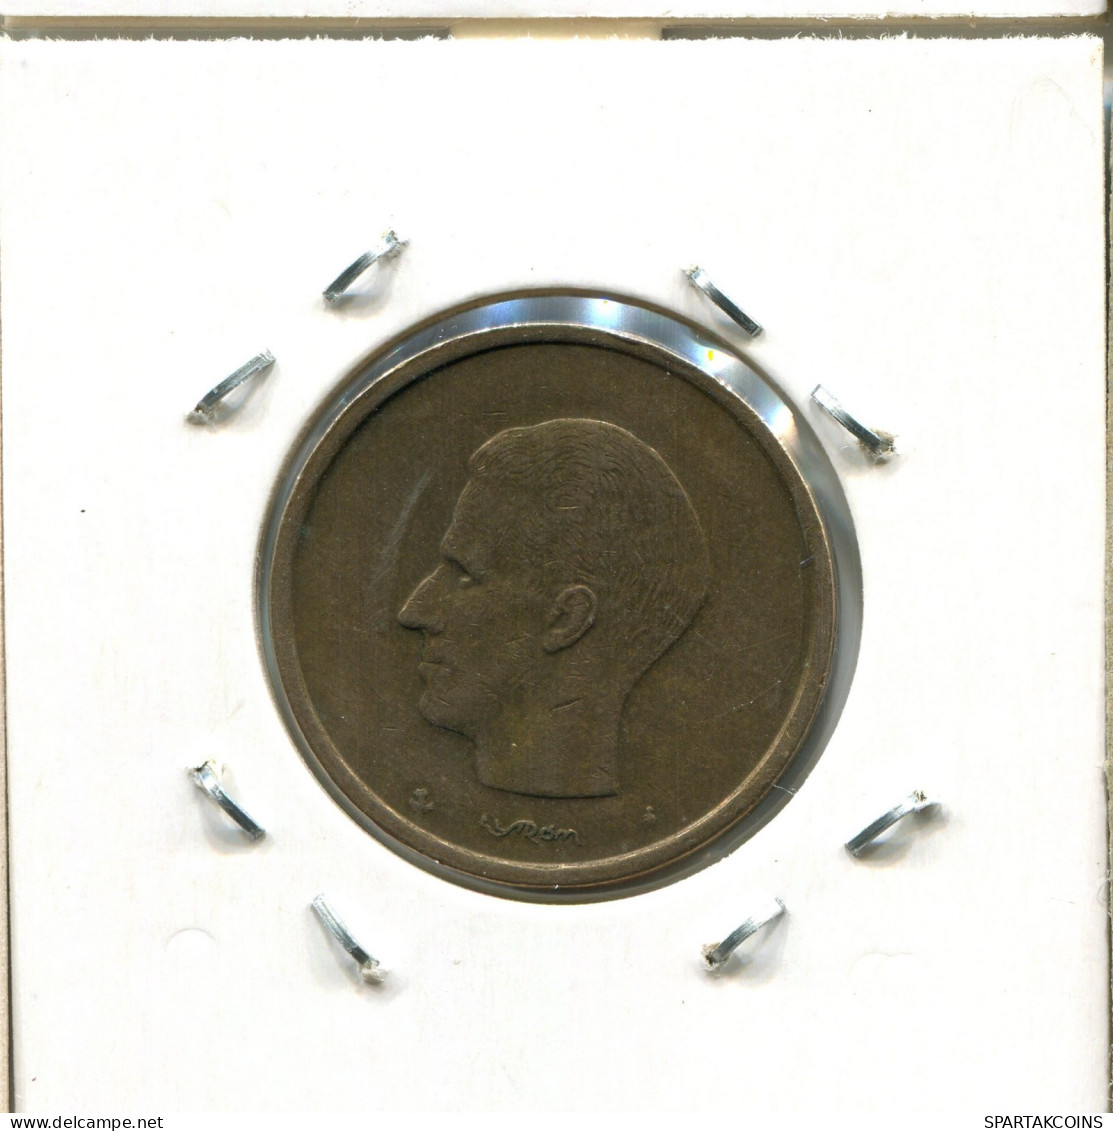 20 FRANCS 1981 FRENCH Text BÉLGICA BELGIUM Moneda #AW295.E.A - 20 Francs